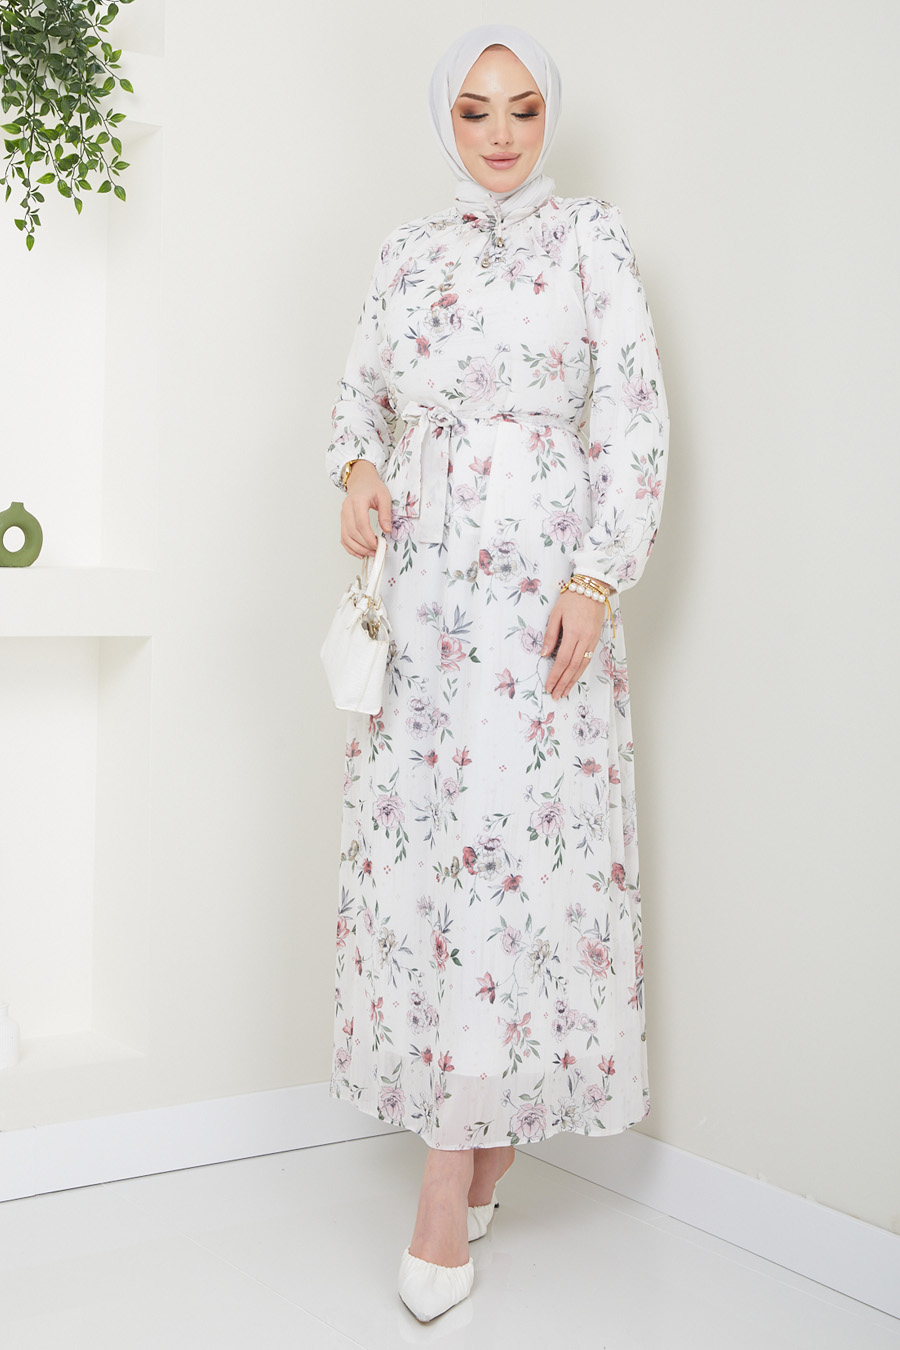 Flower Patterned Dress -  WHITE 